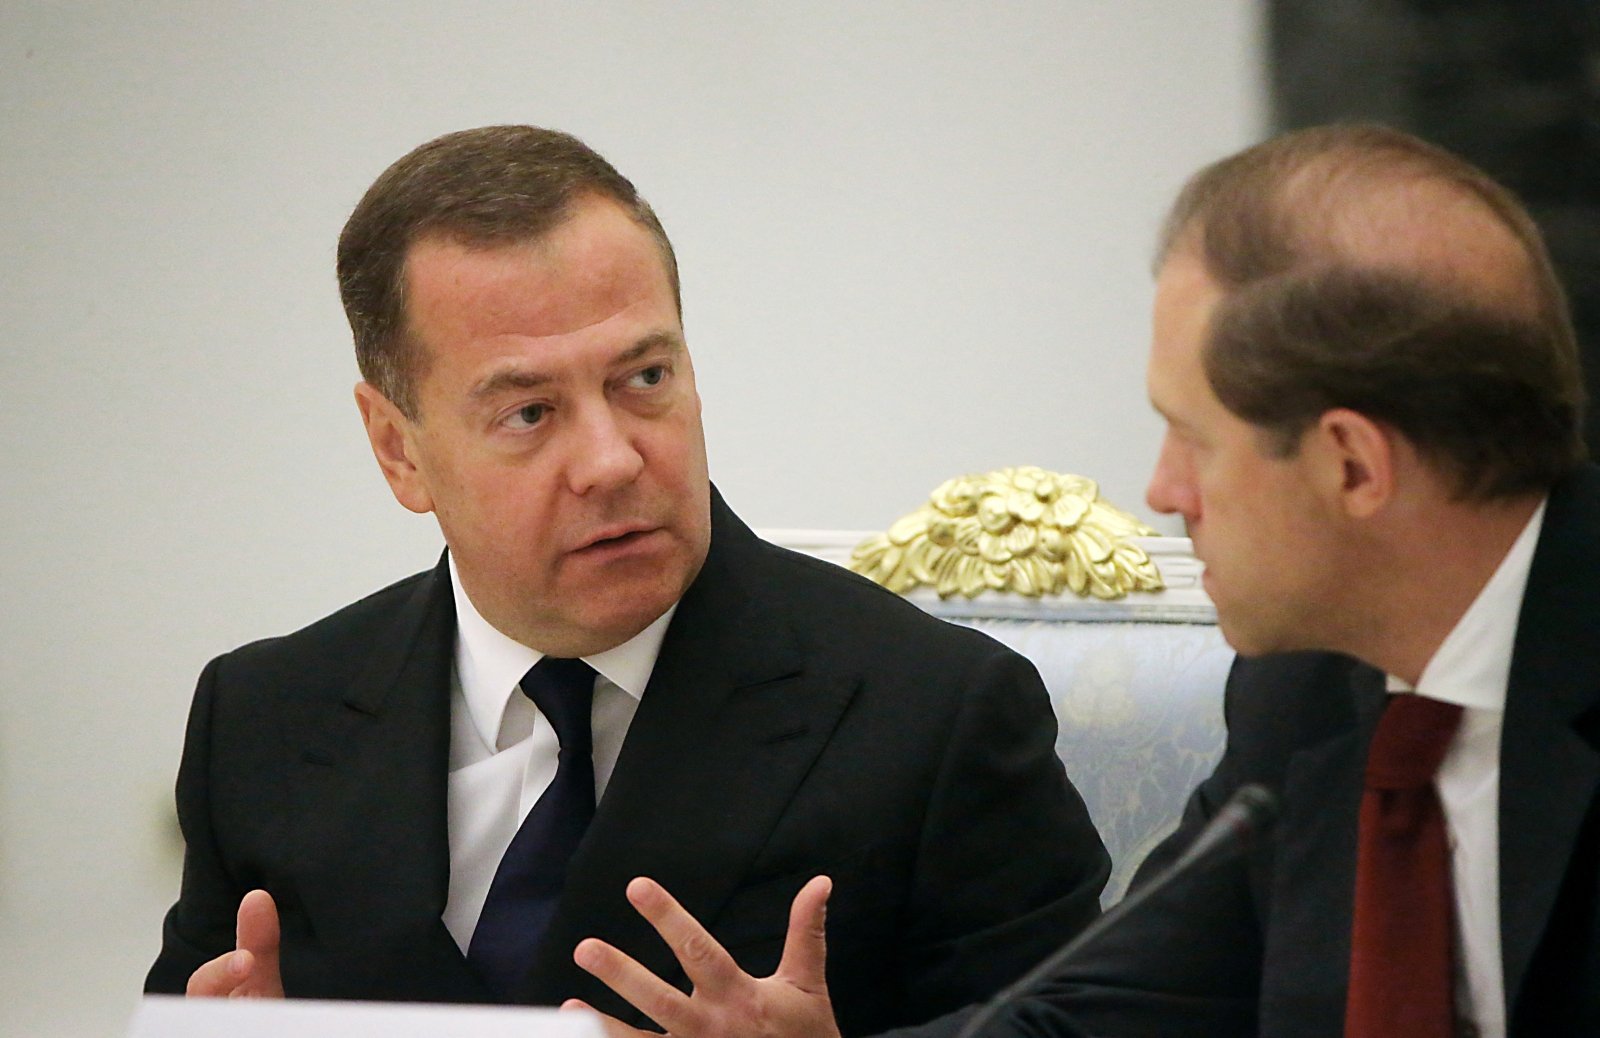 Medvedevas sproginėja pykčiu: įvairūs idiotai tegu mūsų negąsdina – kelio atgal nėra